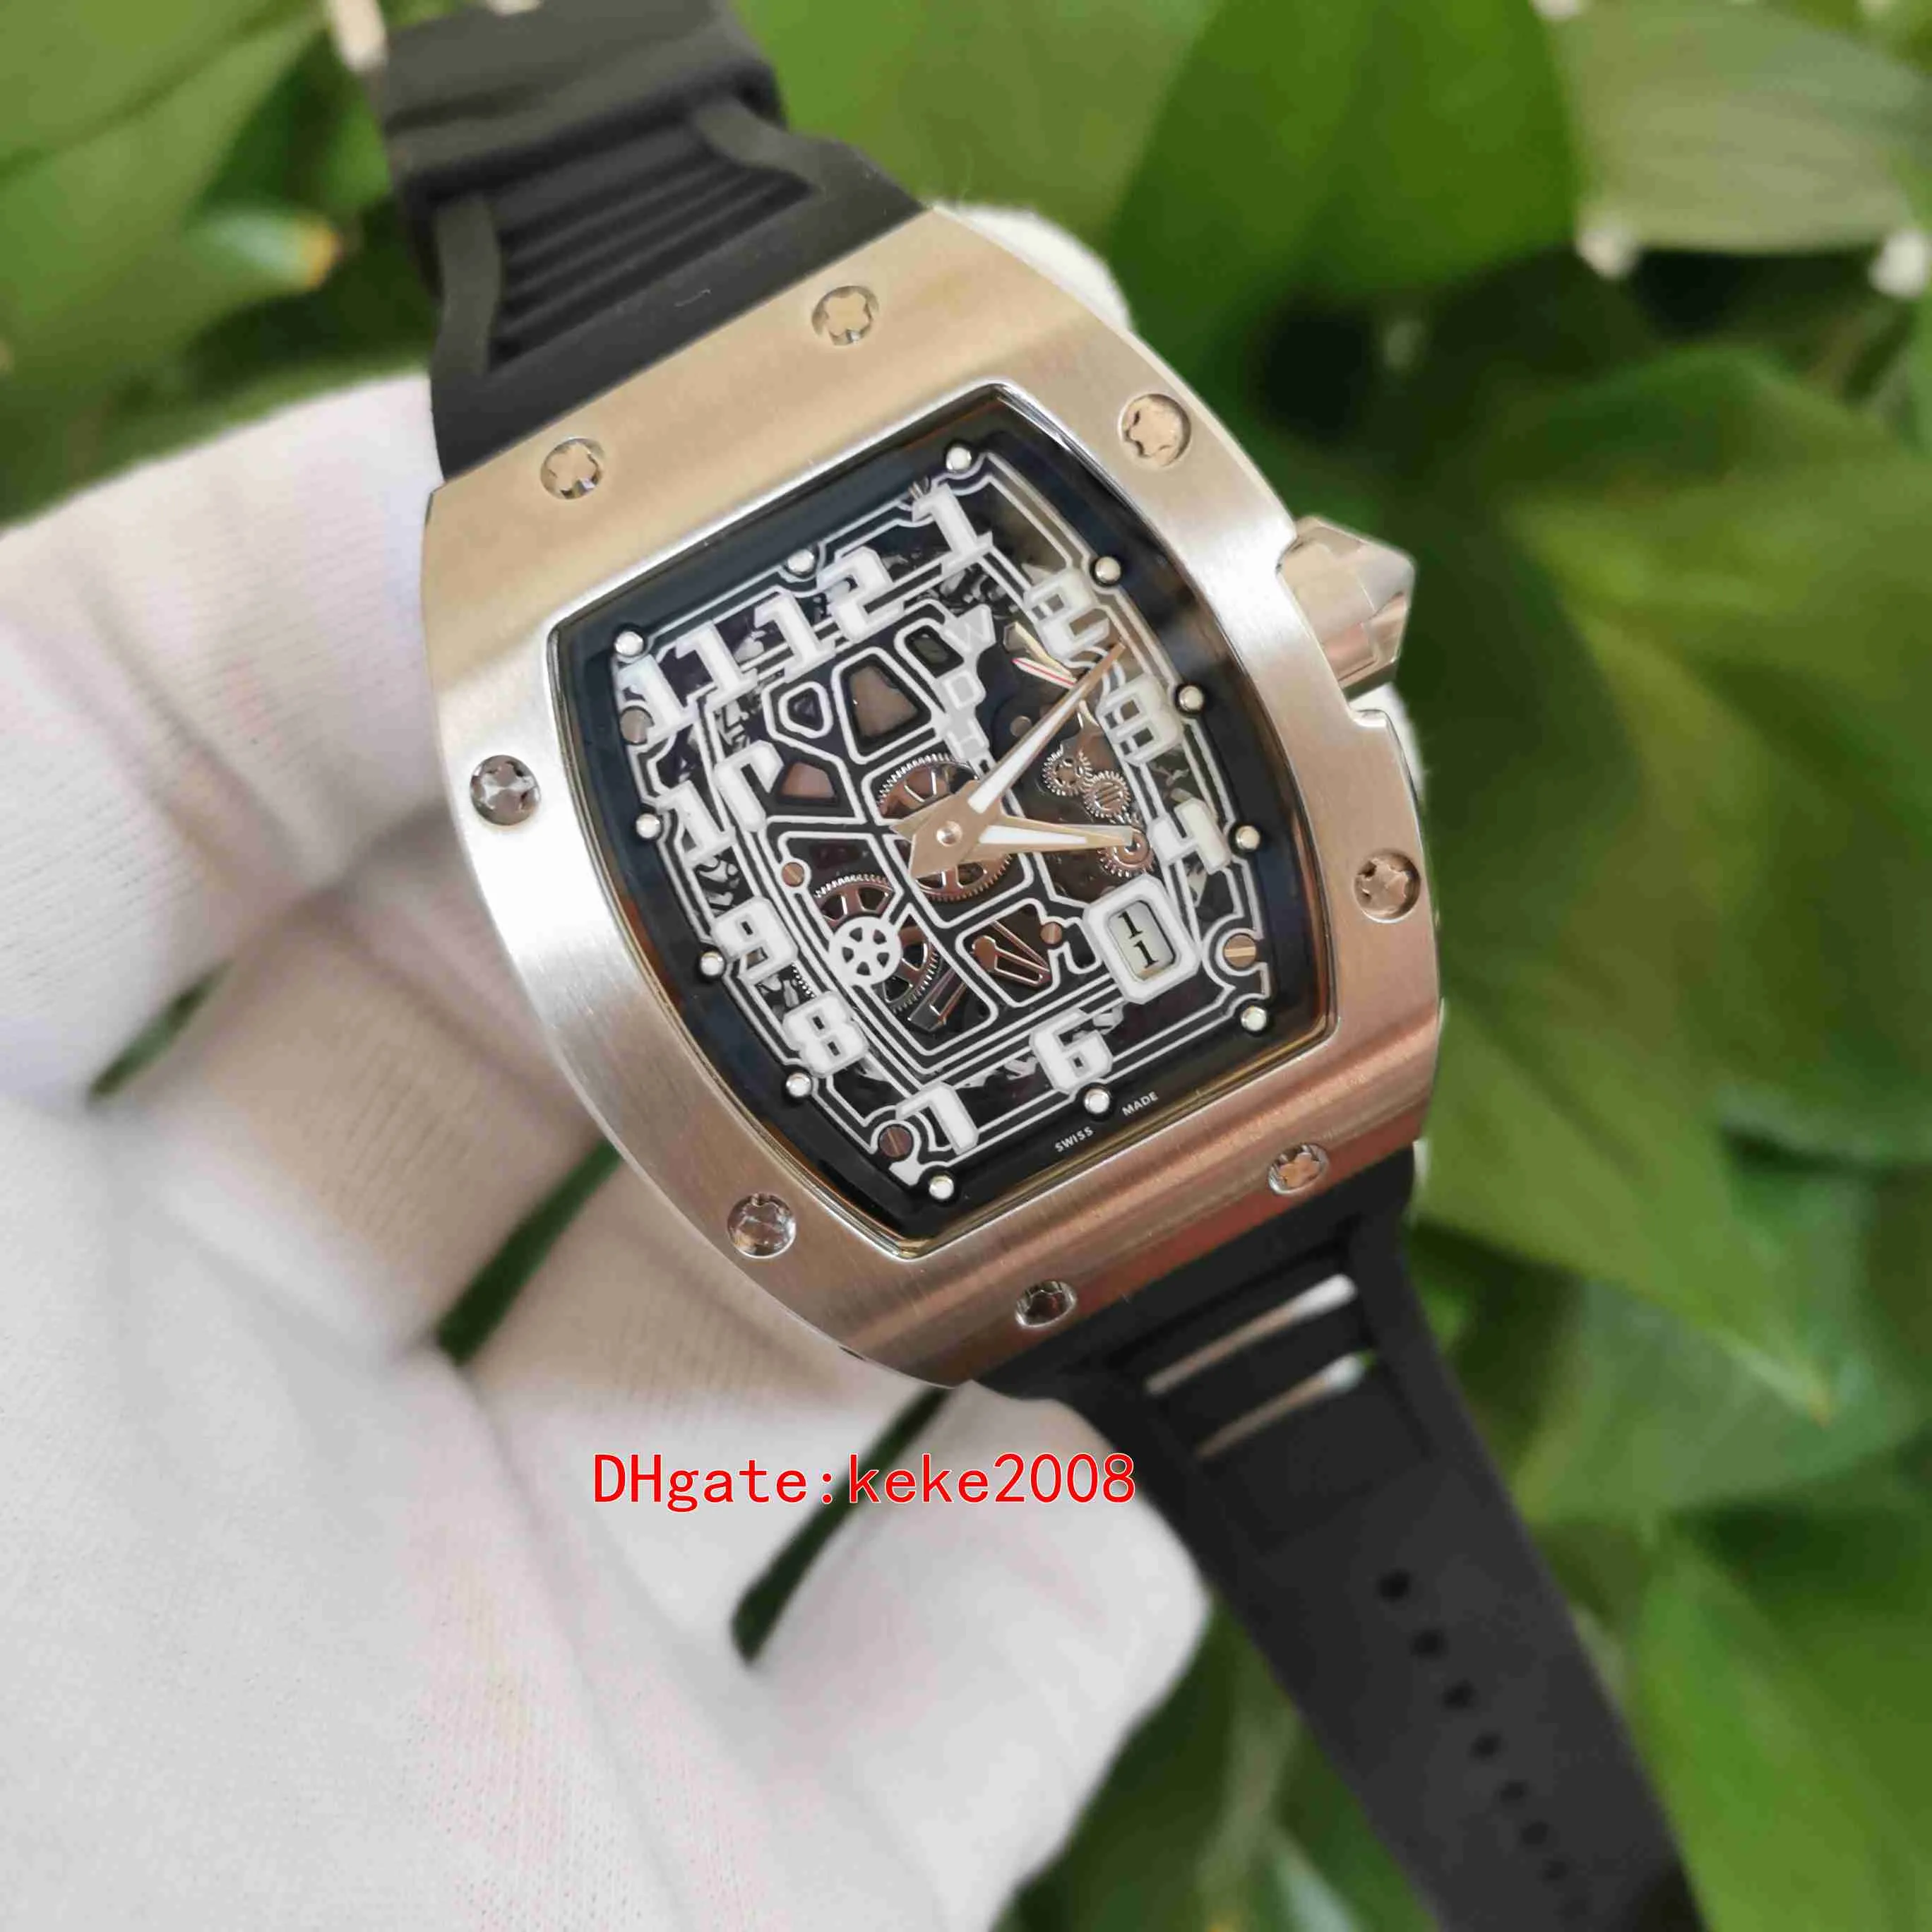 Excelente qualidade superior relógios 38mm x 47mm r m 67 67-01ti extra plano aço inoxidável pulseira de borracha preta transparente mecânico auto297d